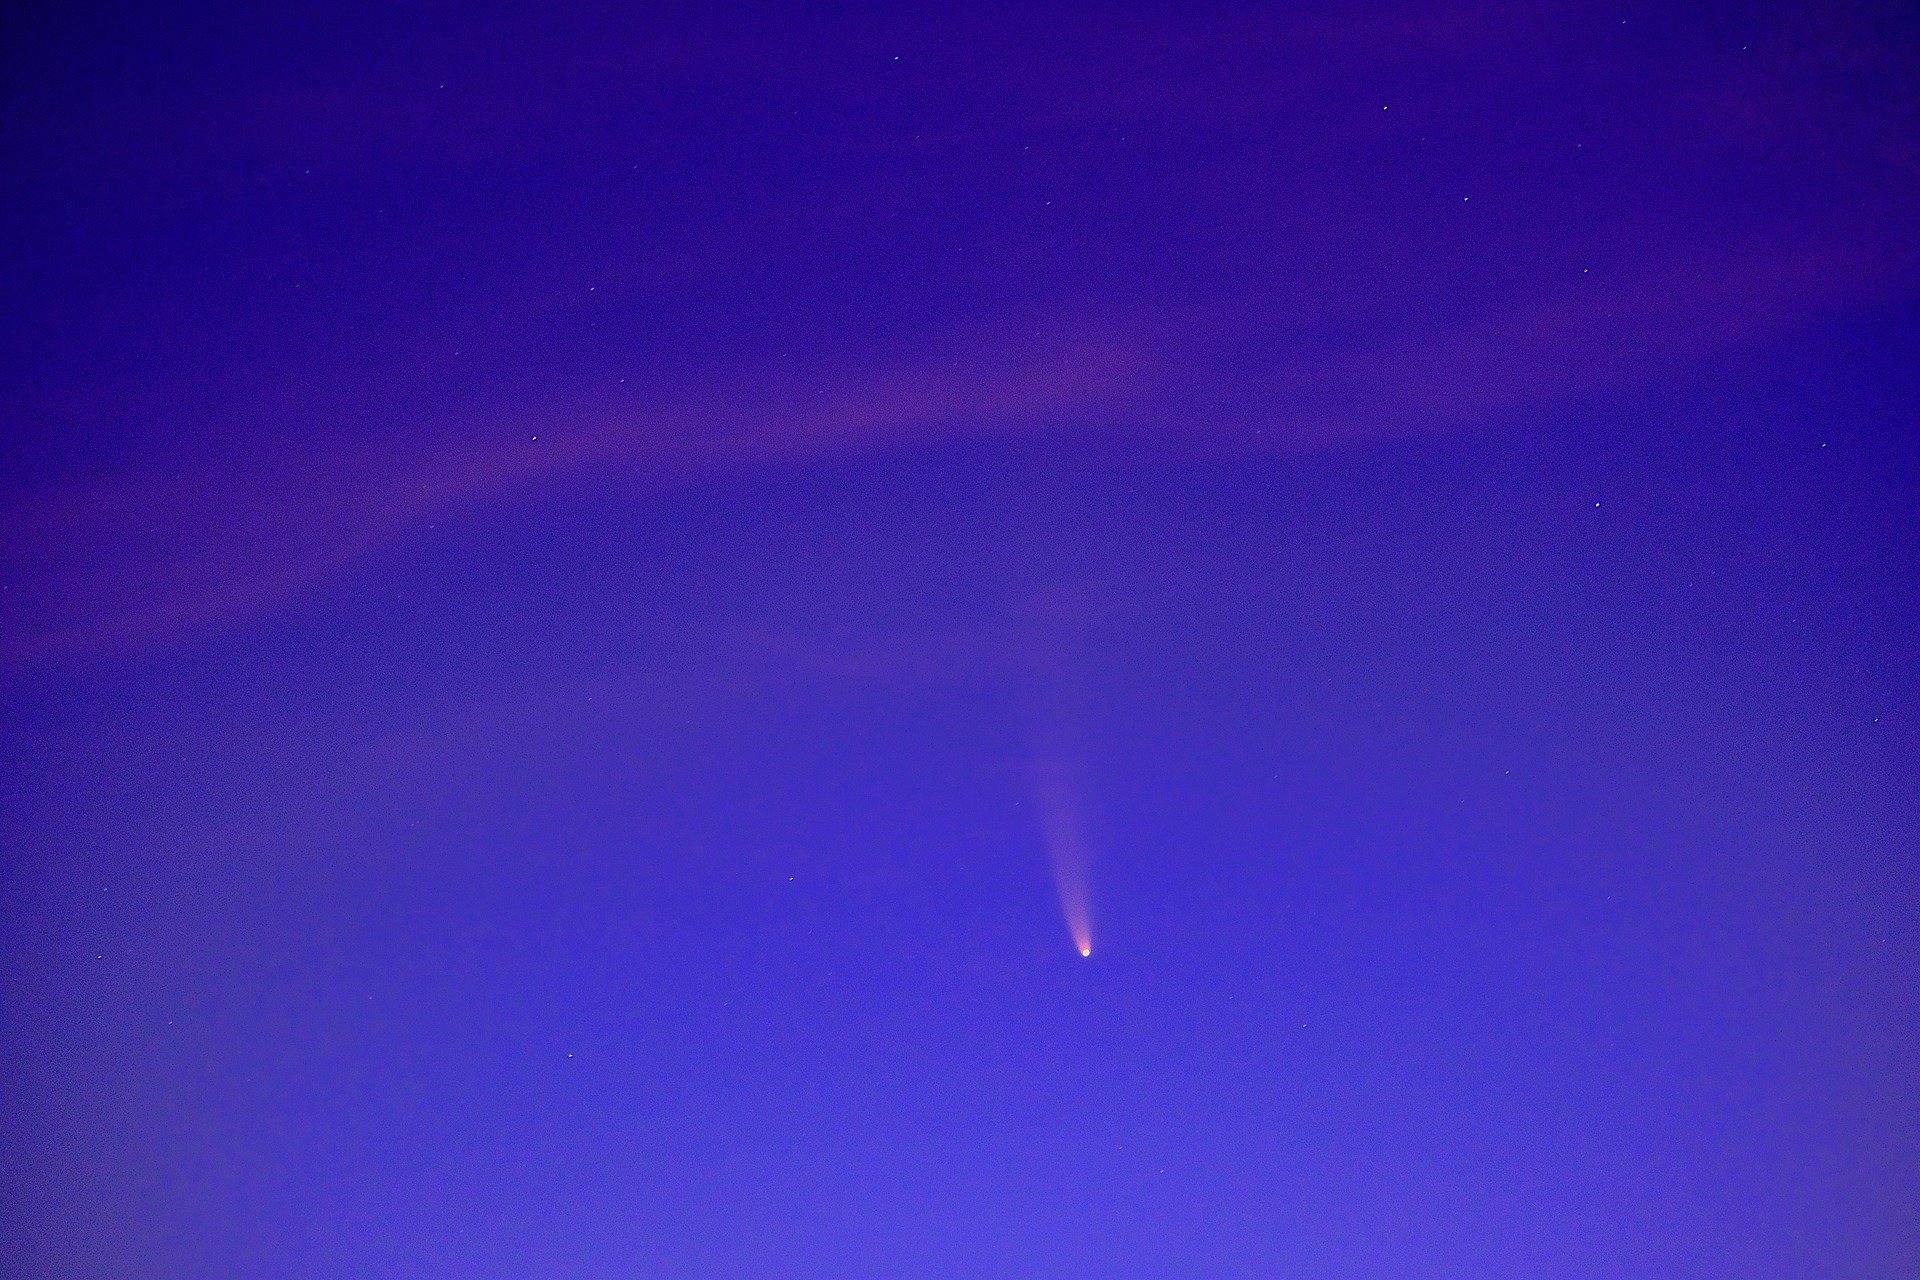 【2020年】ネオワイズ彗星の見える場所・写真・いつまで見える? まとめ